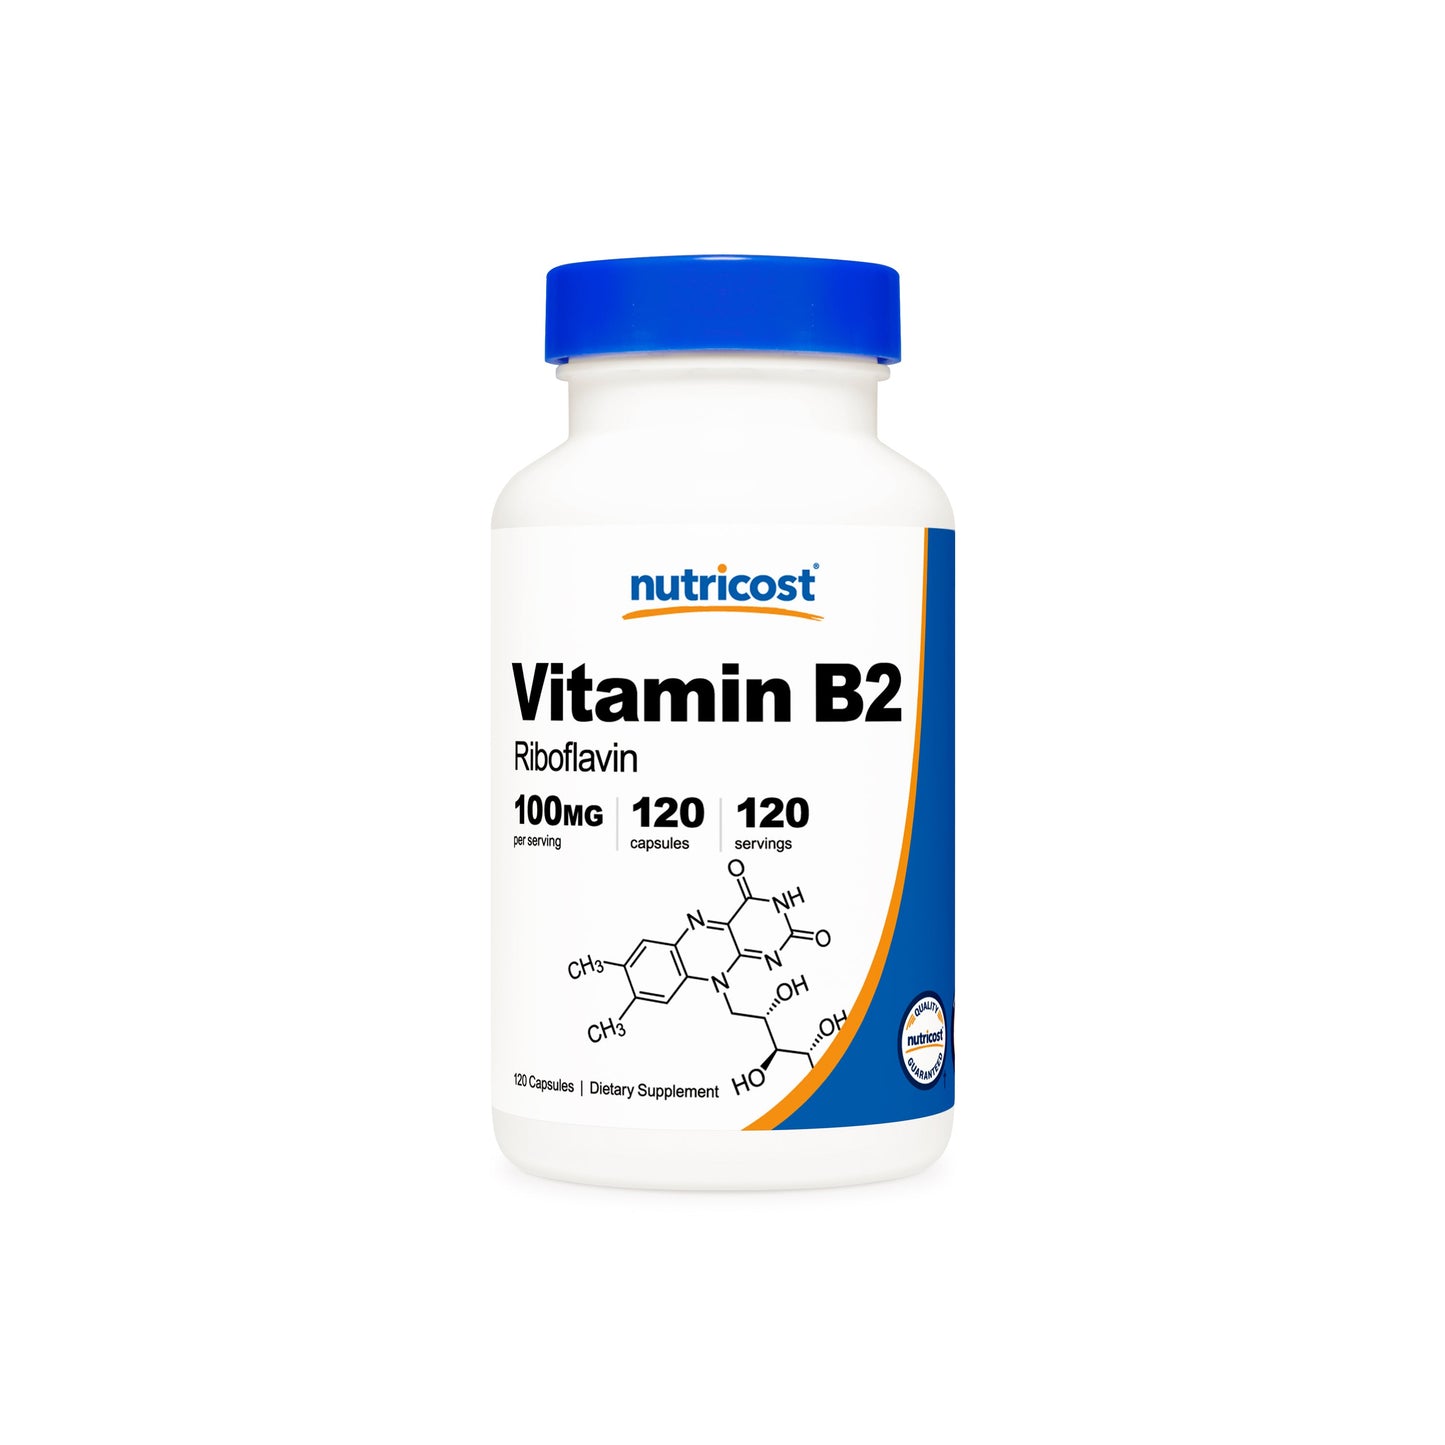 Nutricost Vitamin B2 Riboflavin Capsules